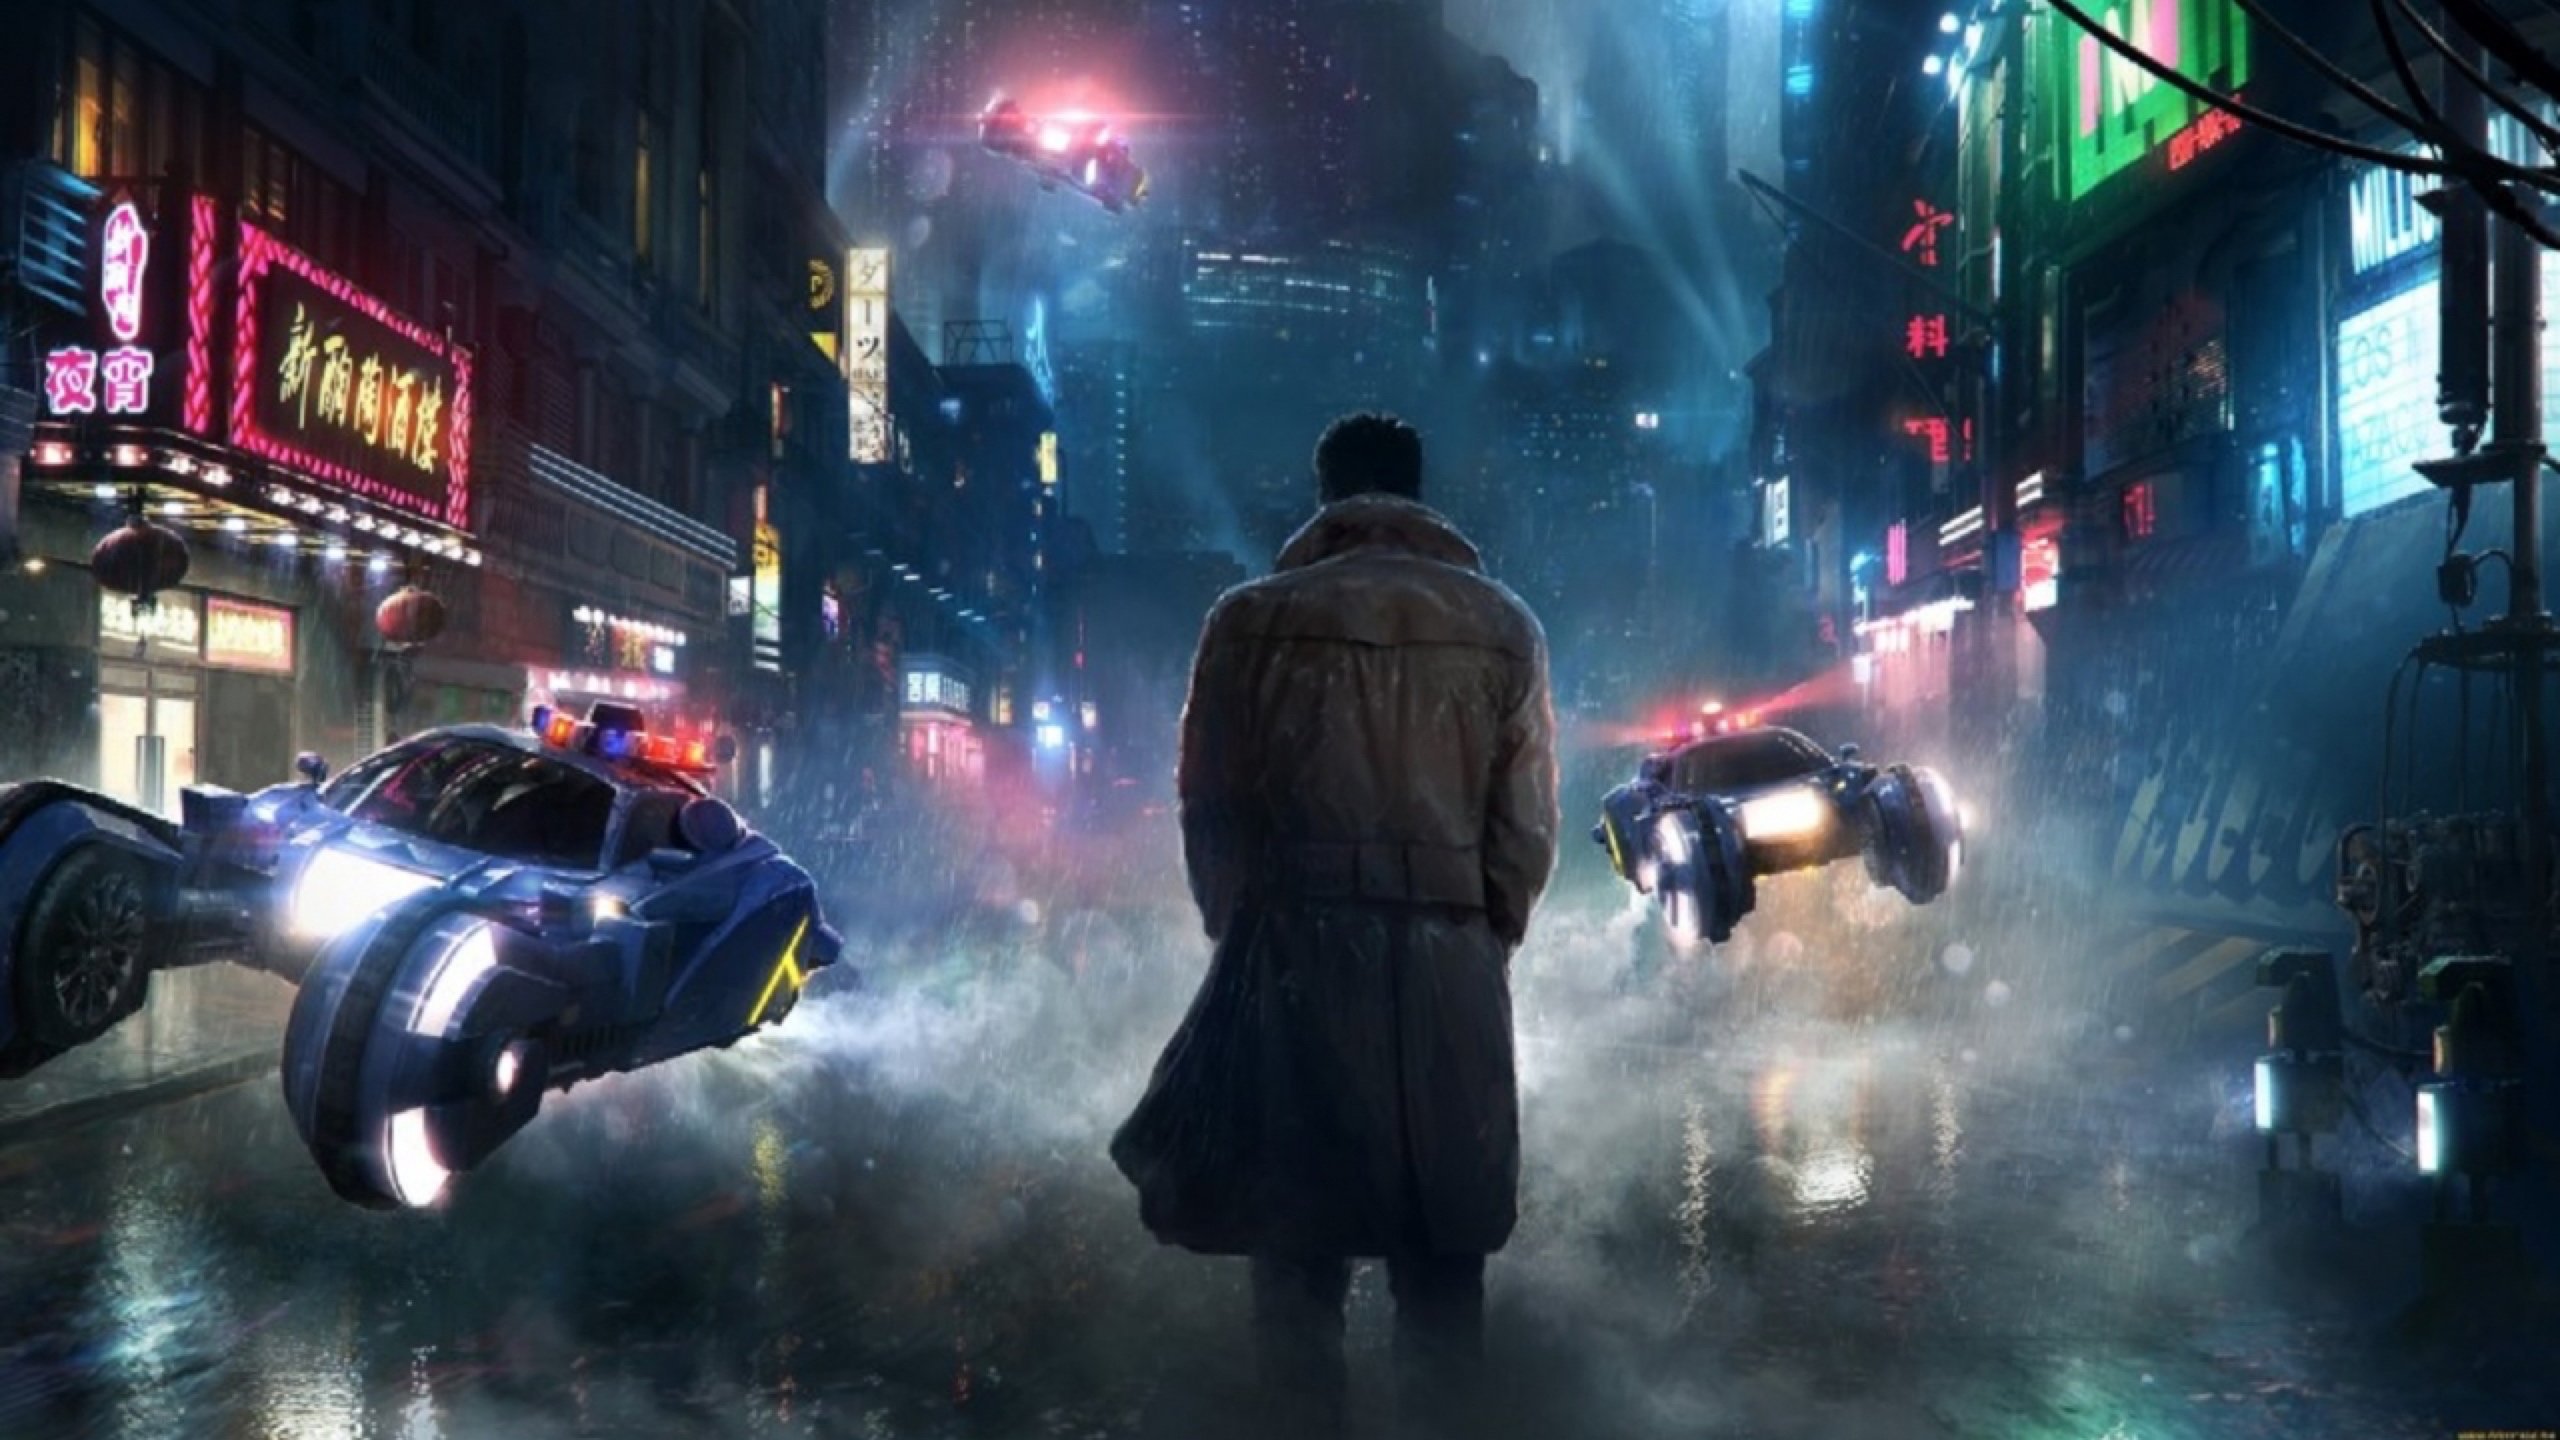 Primer trailer de 'Blade Runner 2049', la secuela del clásico